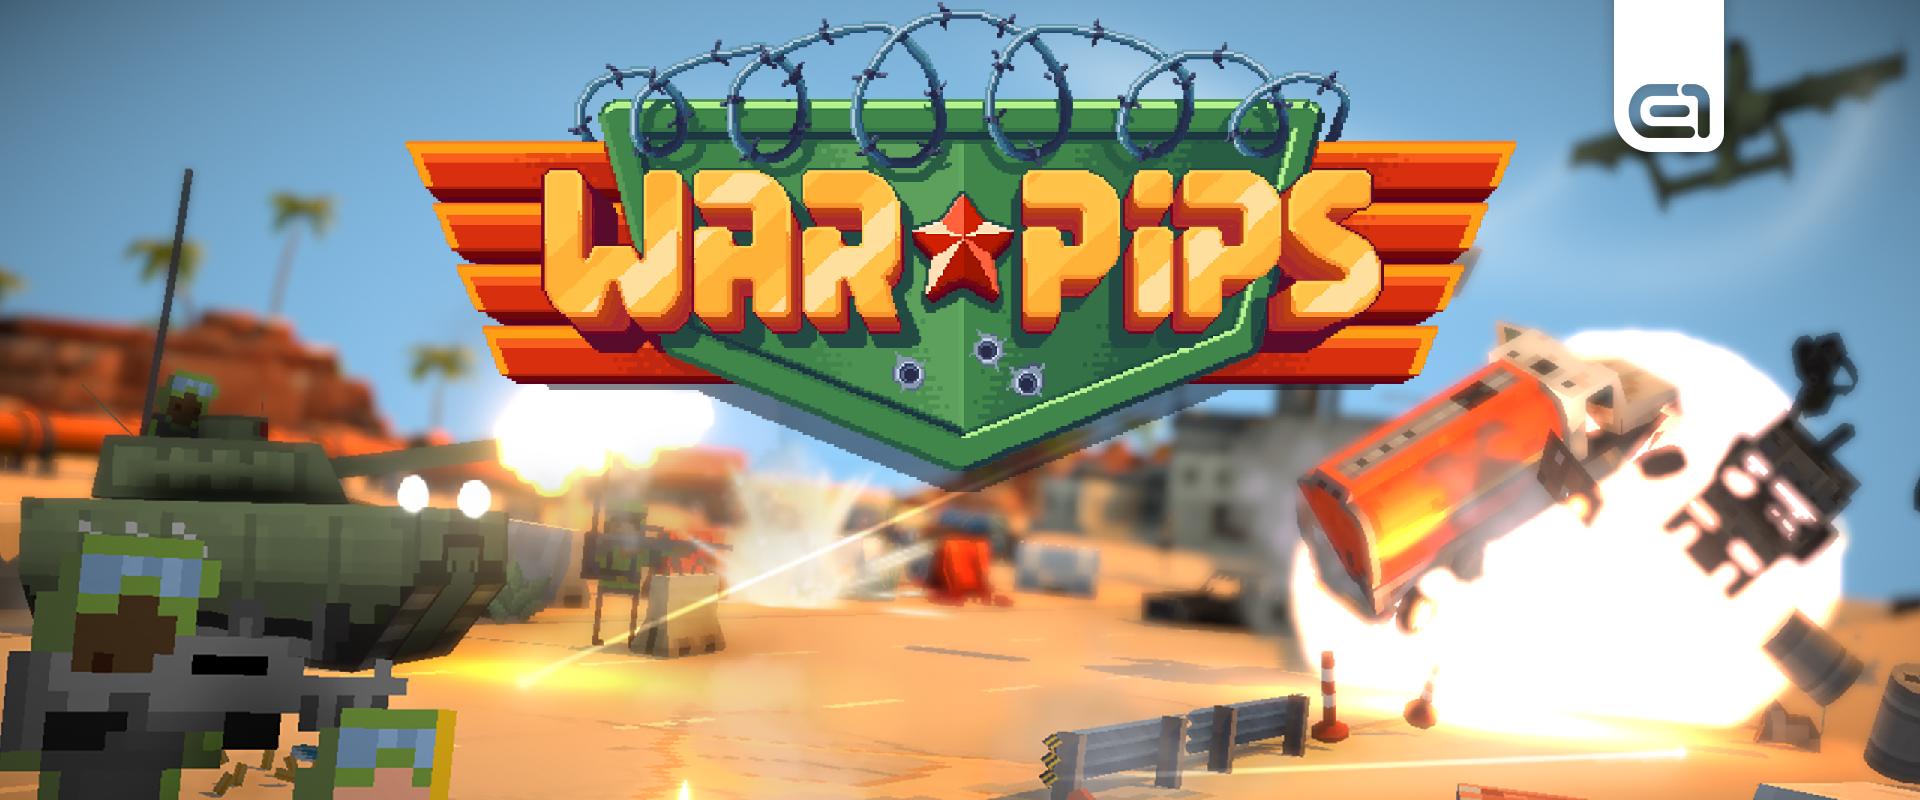 Háborúra fel, kiderült az Epic Games jövőheti ingyenes játéka